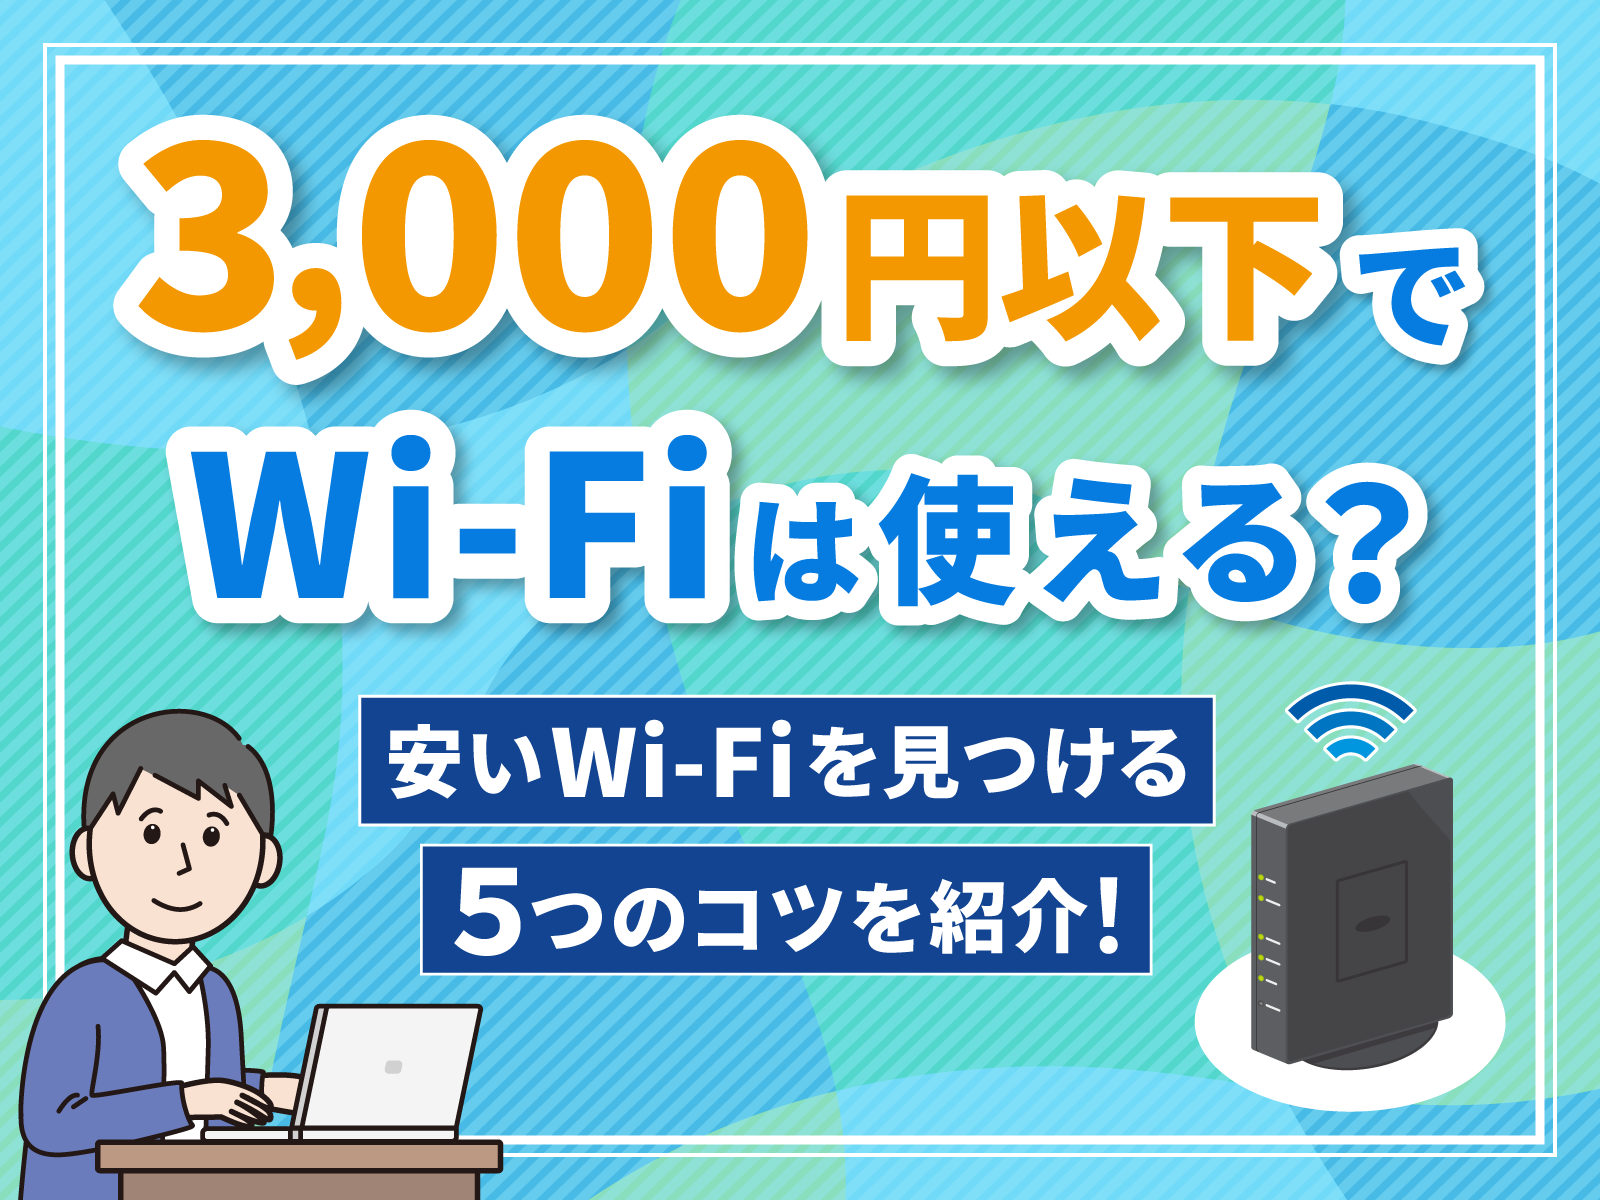 wi-fi 3000円以下 アイキャッチ